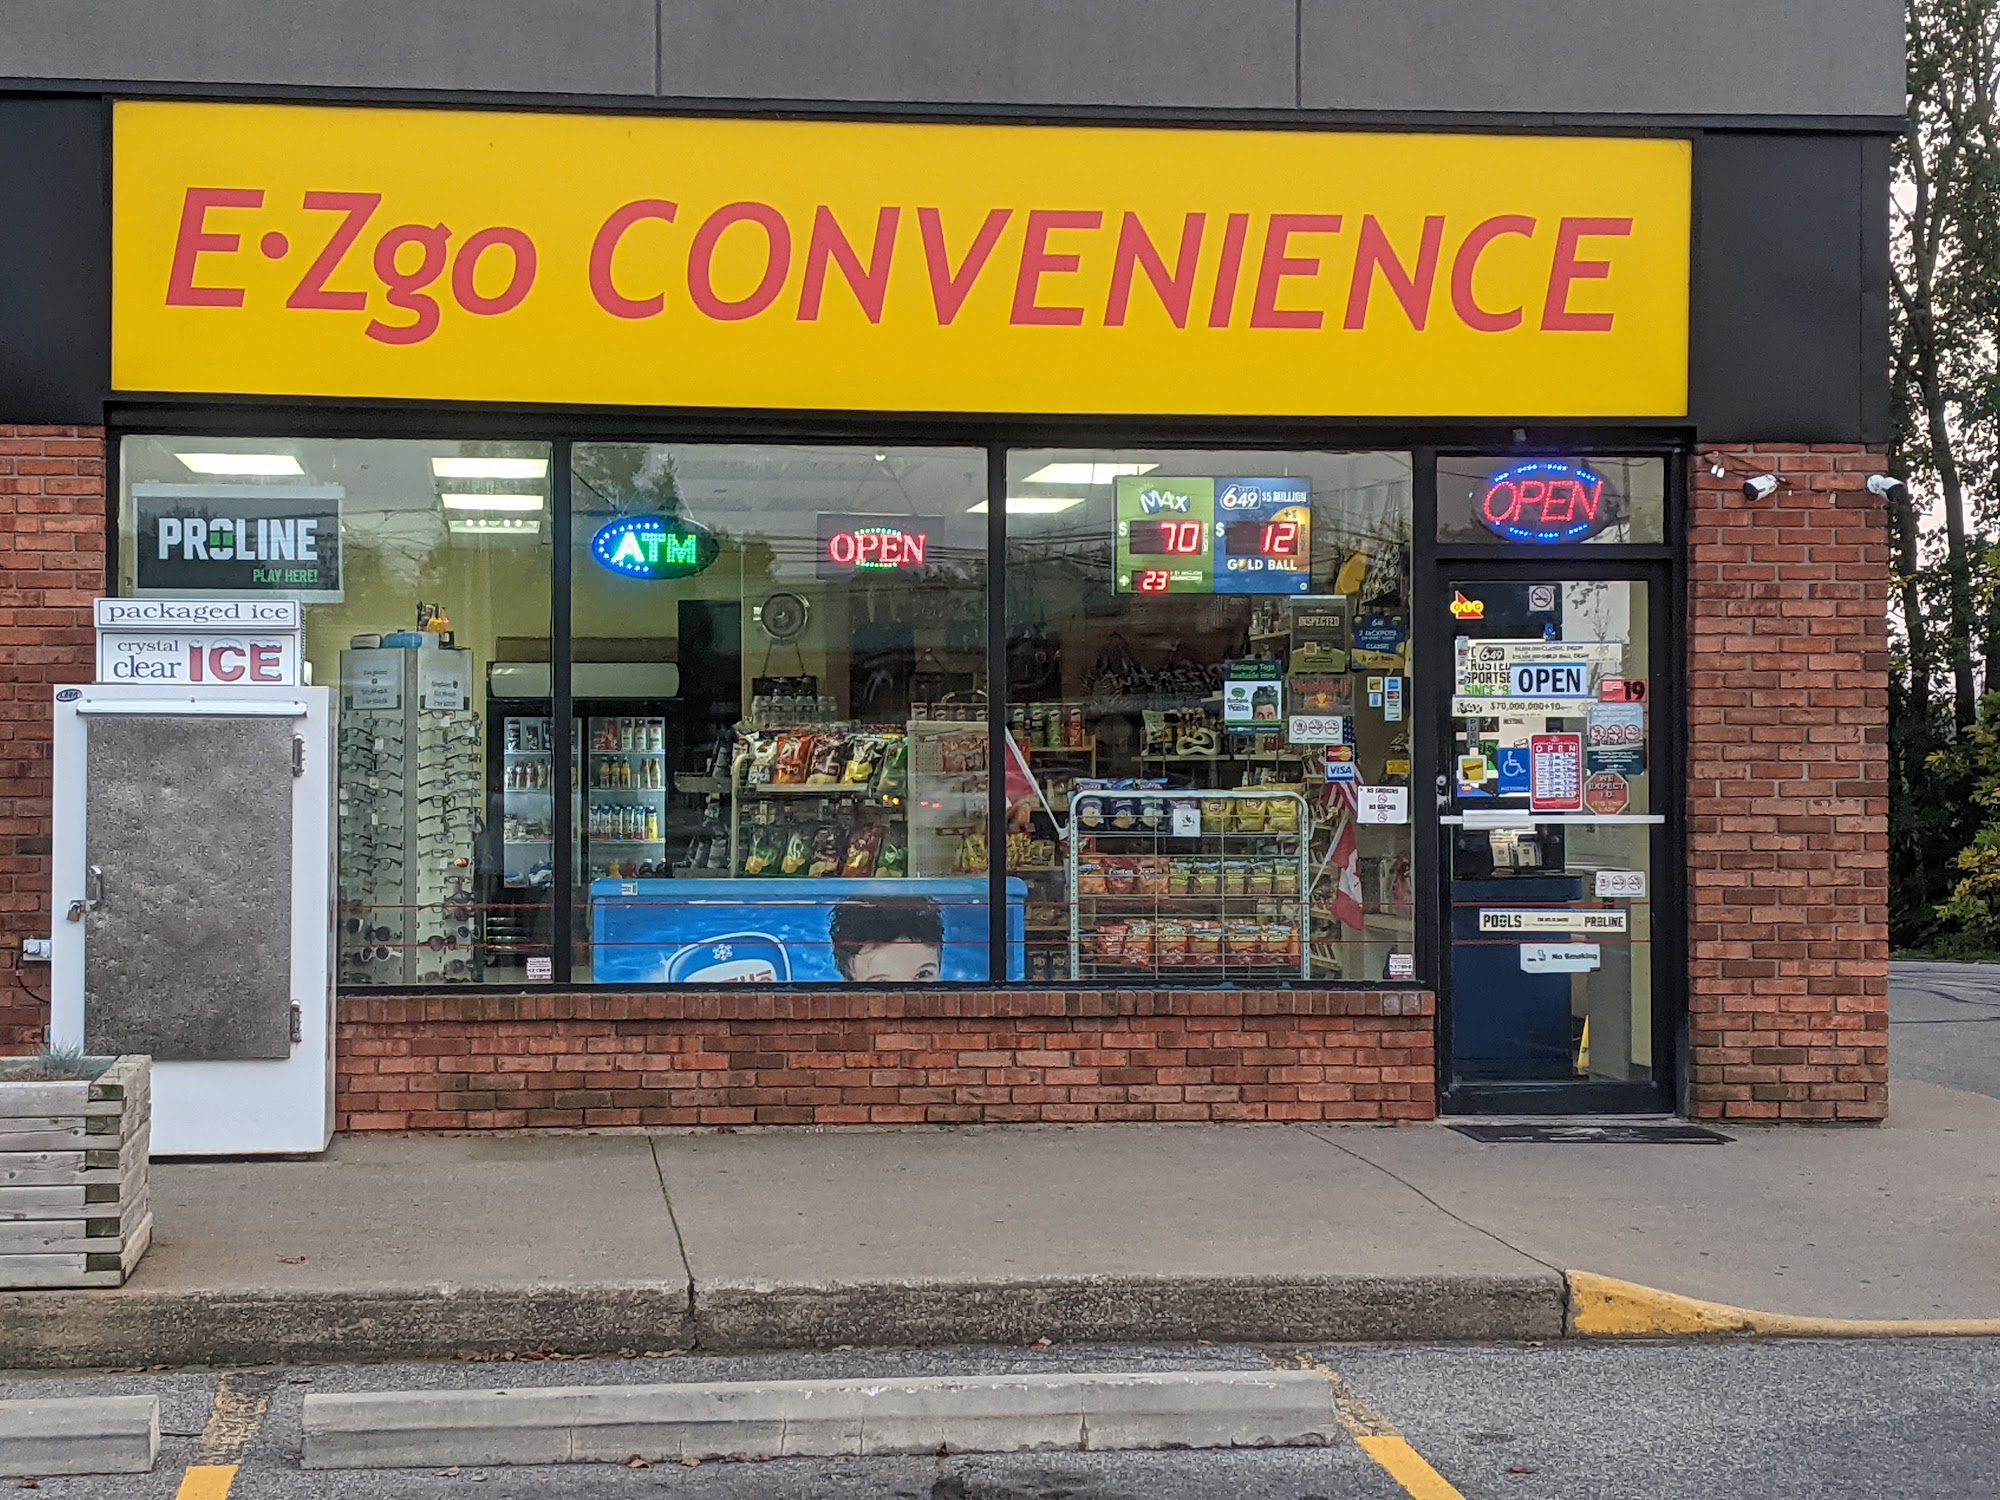 E-Zgo Convenience